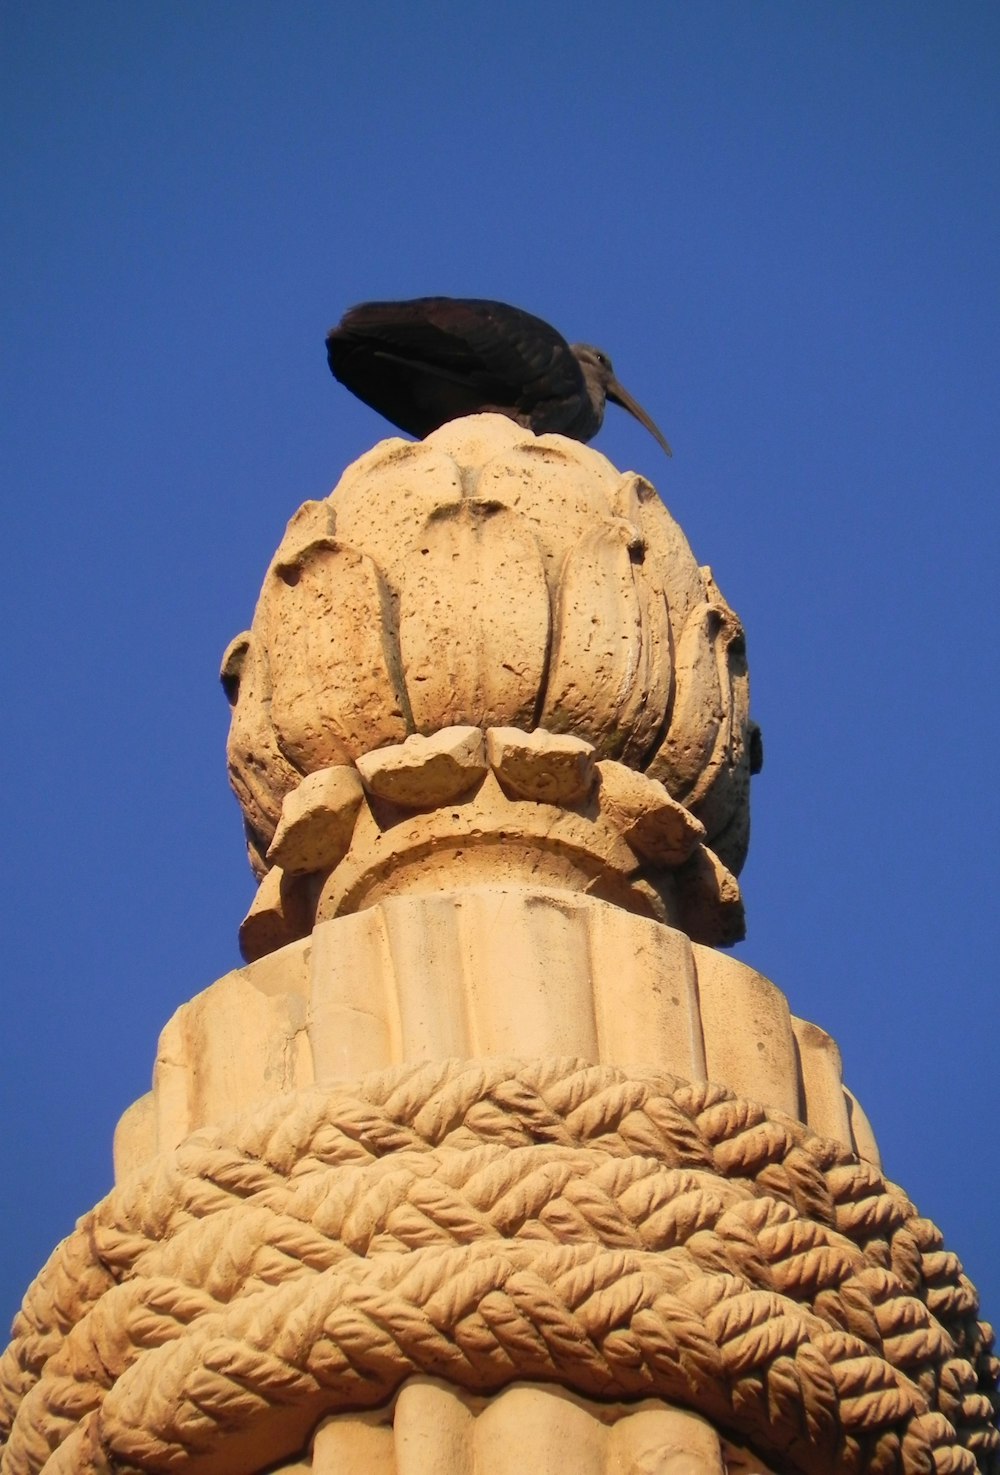 茶色のコンクリート像に黒い鳥